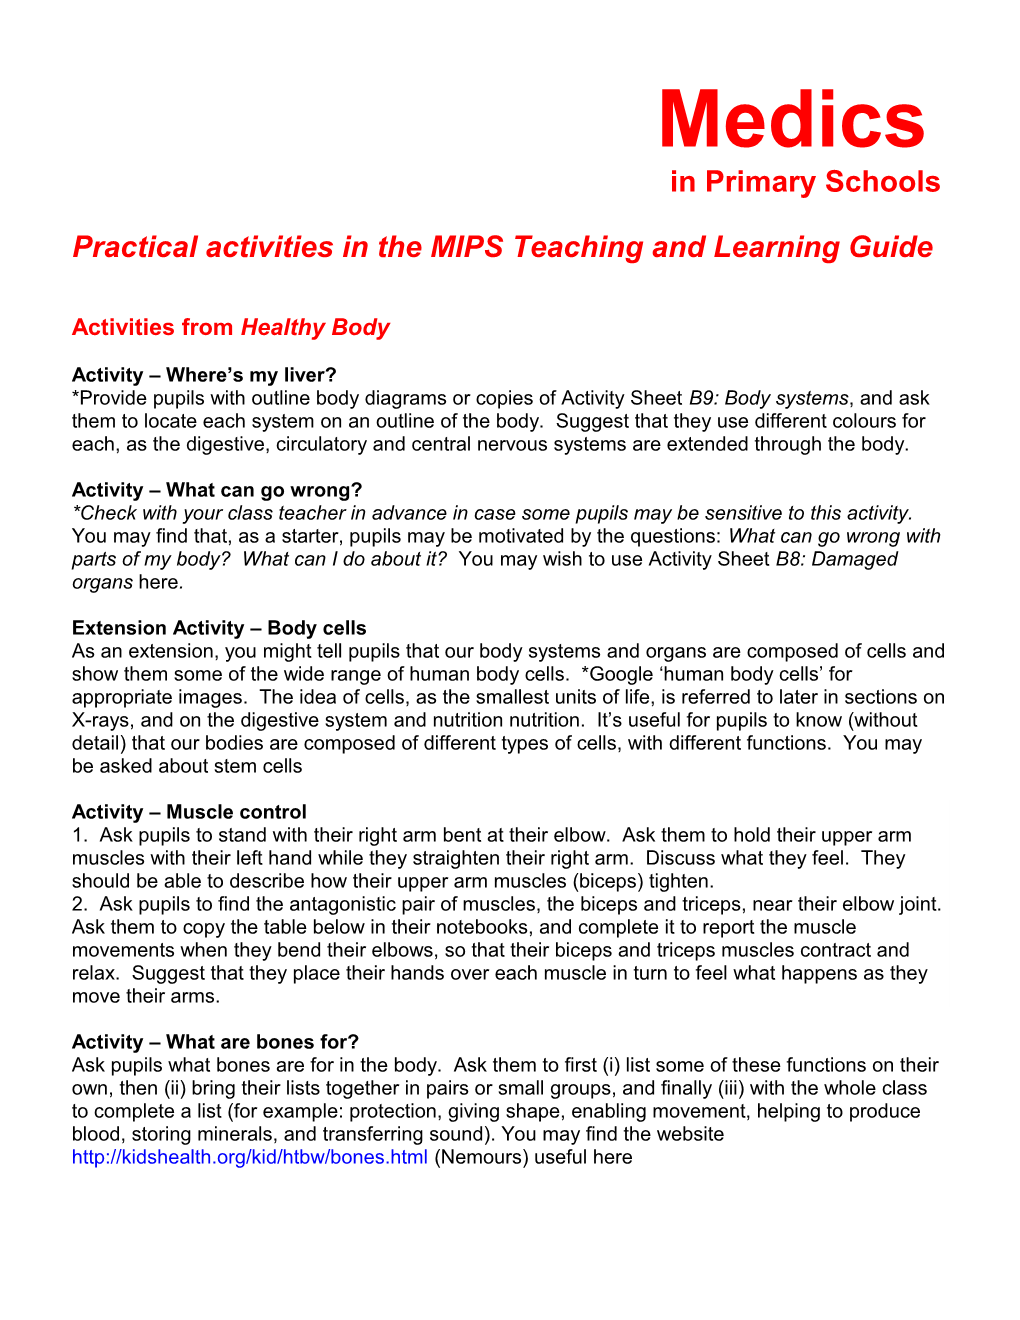 Medics in Primary Schools Activities